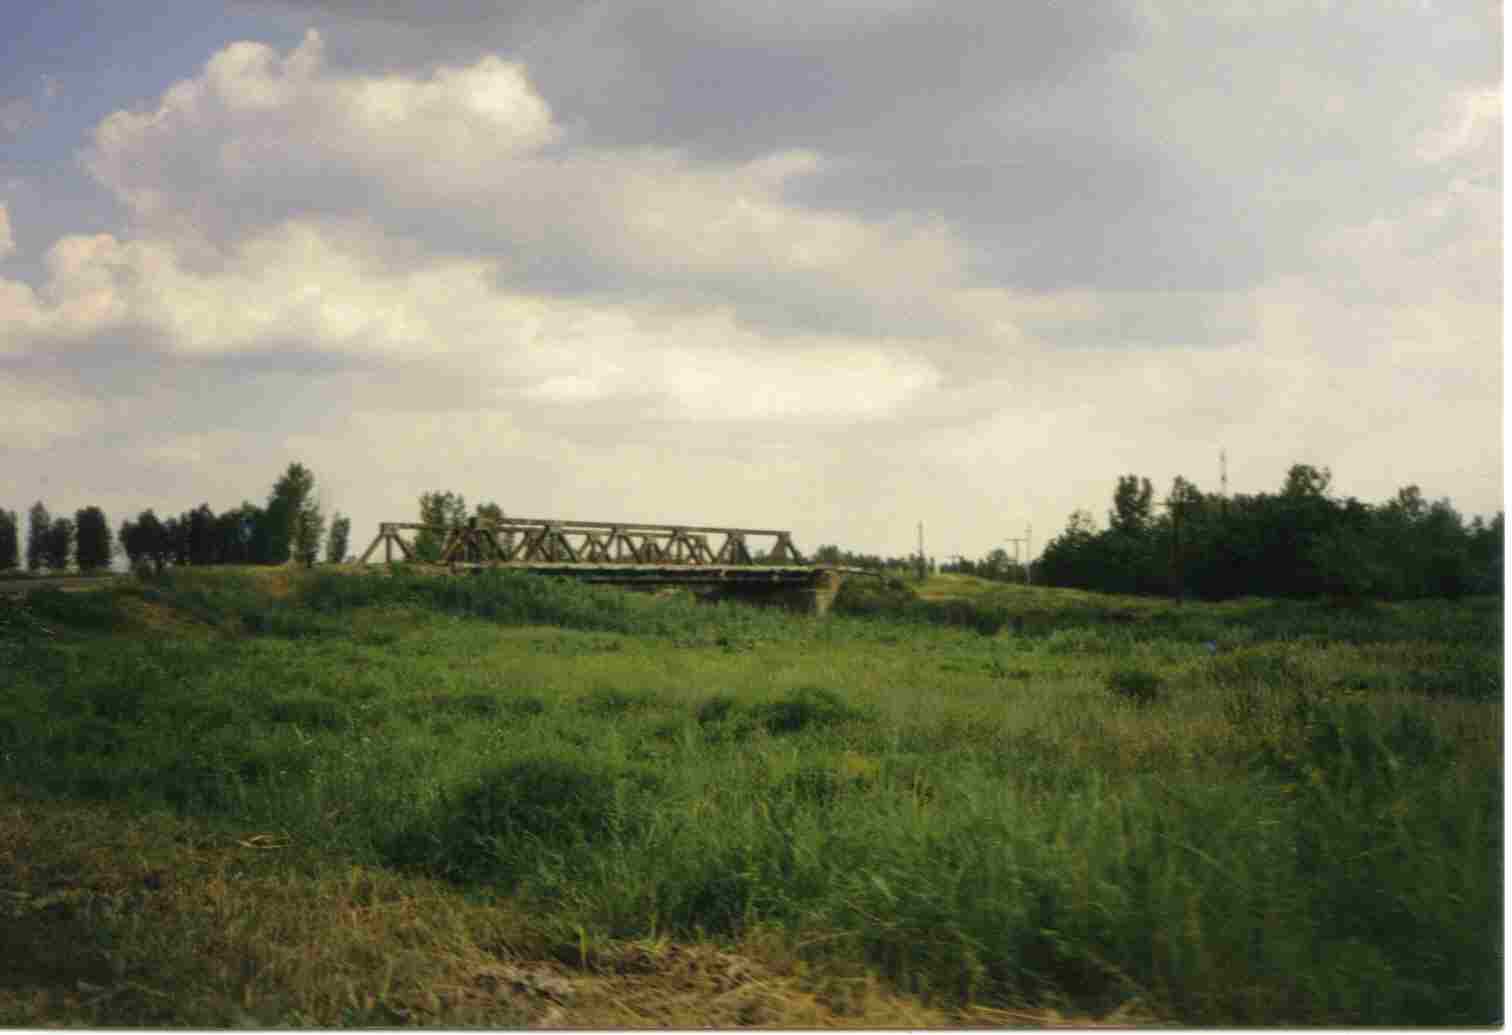 Мост из Пришиба на Гальбштадт через речку Молочная. Пришиб, 1996.